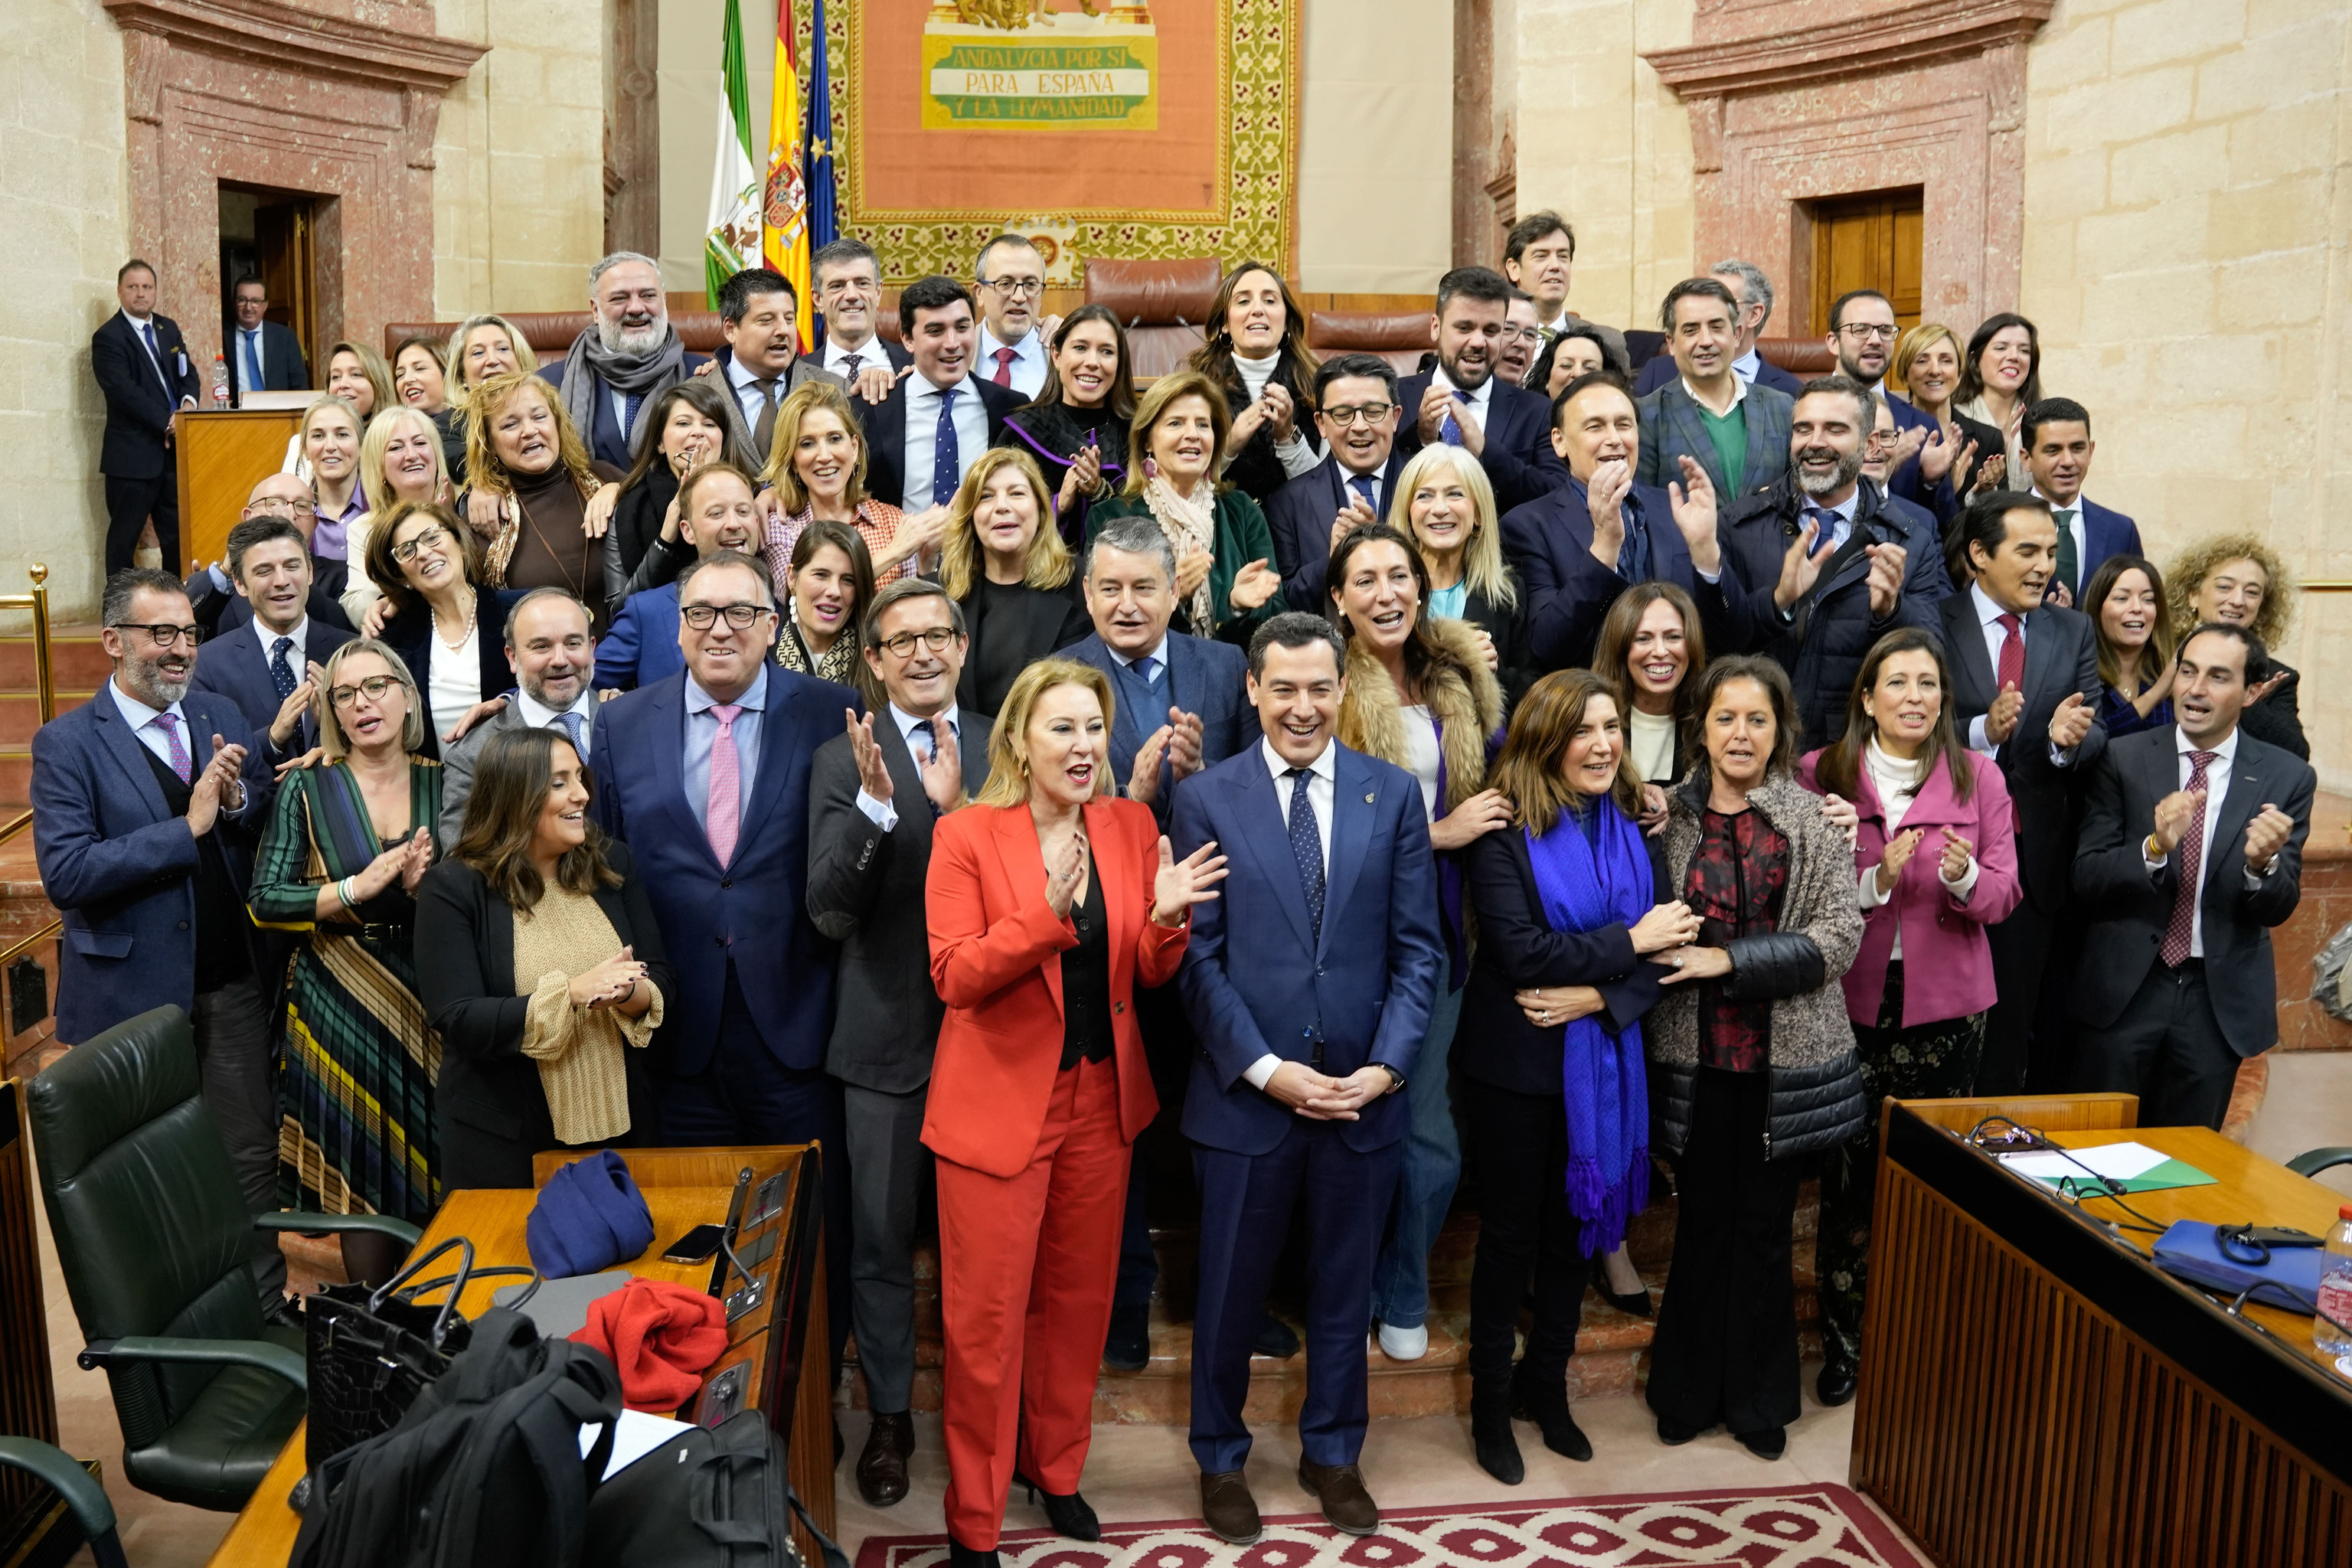 La consejera de Economa, Hacienda y Fondos Europeos, junto al presidente de la Junta y al grupo de consejeros y diputados del PP en el Parlamento andaluz.